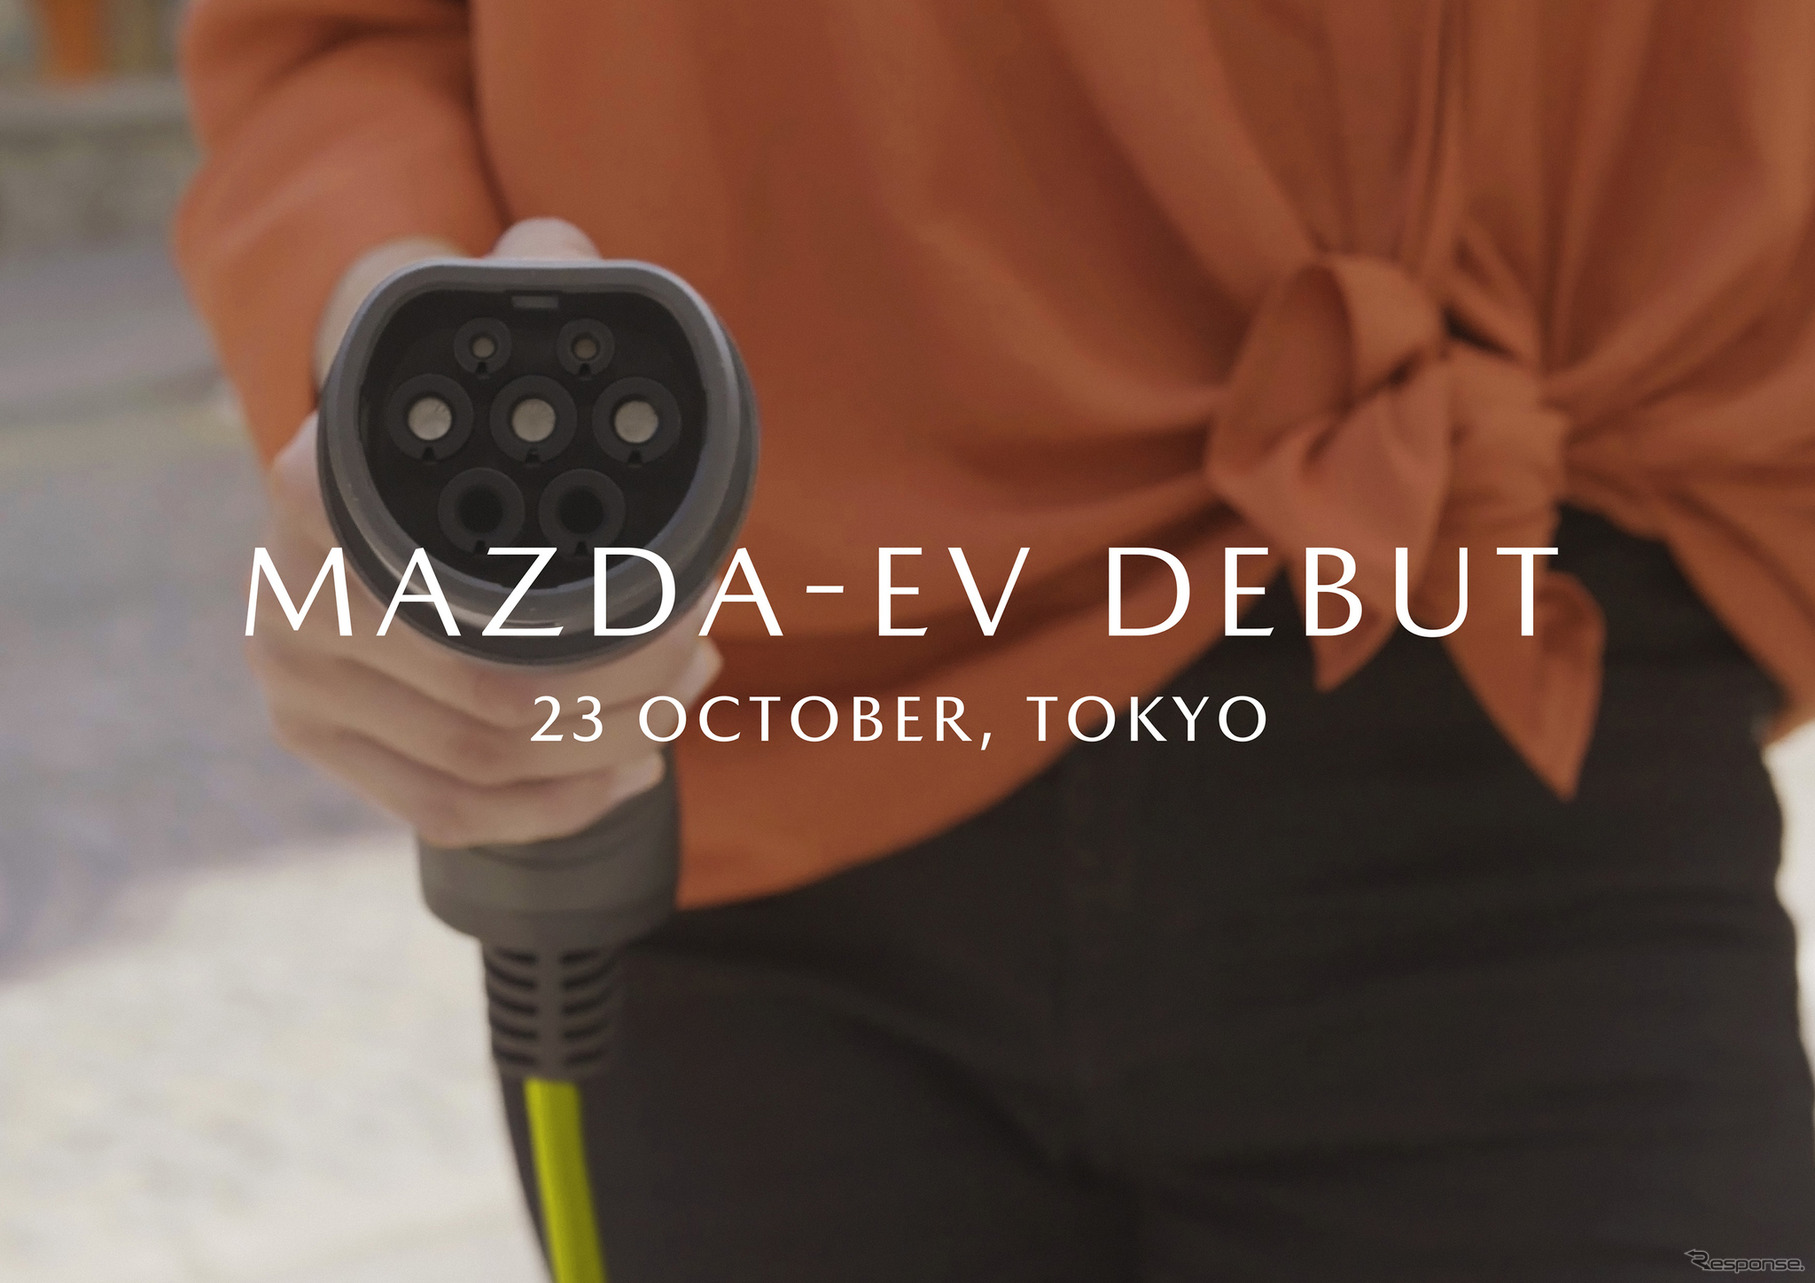 東京モーターショー2019でEVを発表予定のマツダ